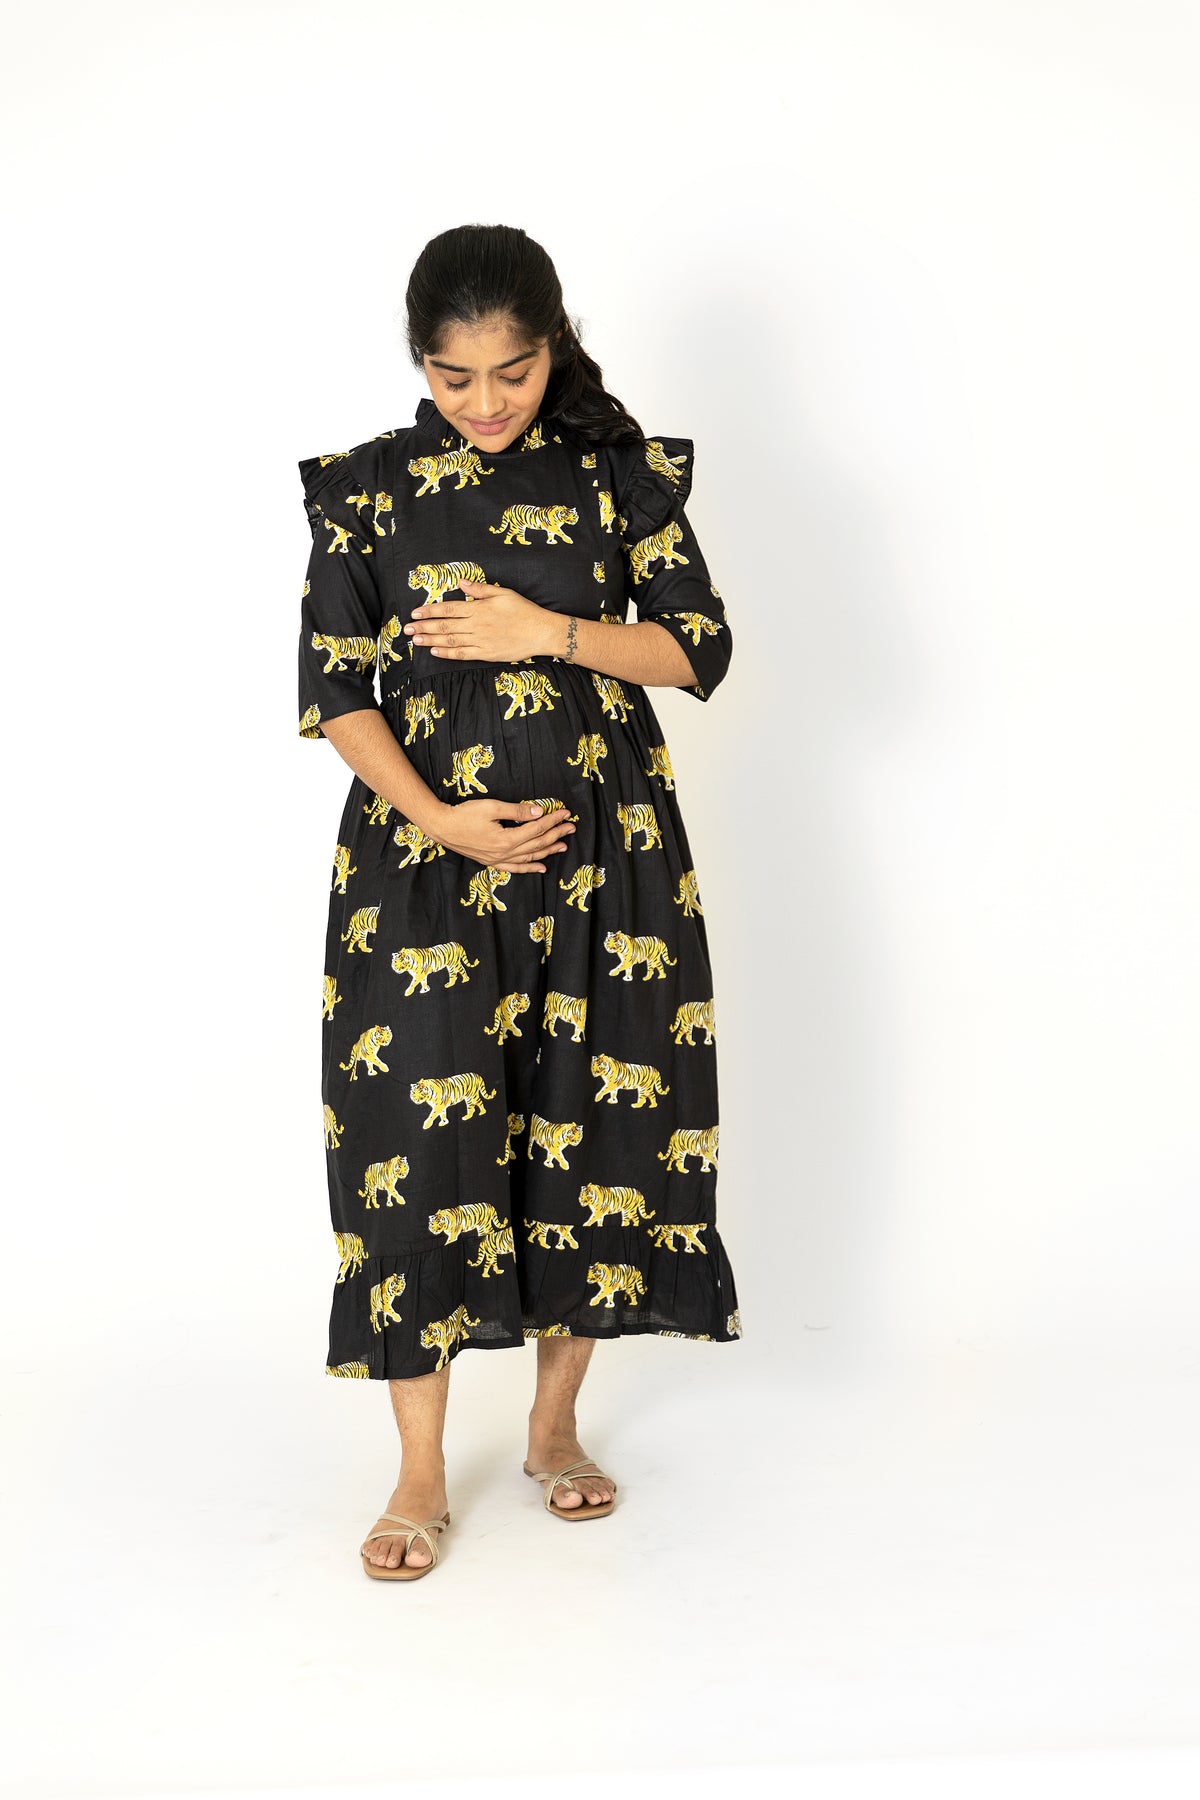 Black Tiger Dress - Maternity Wear